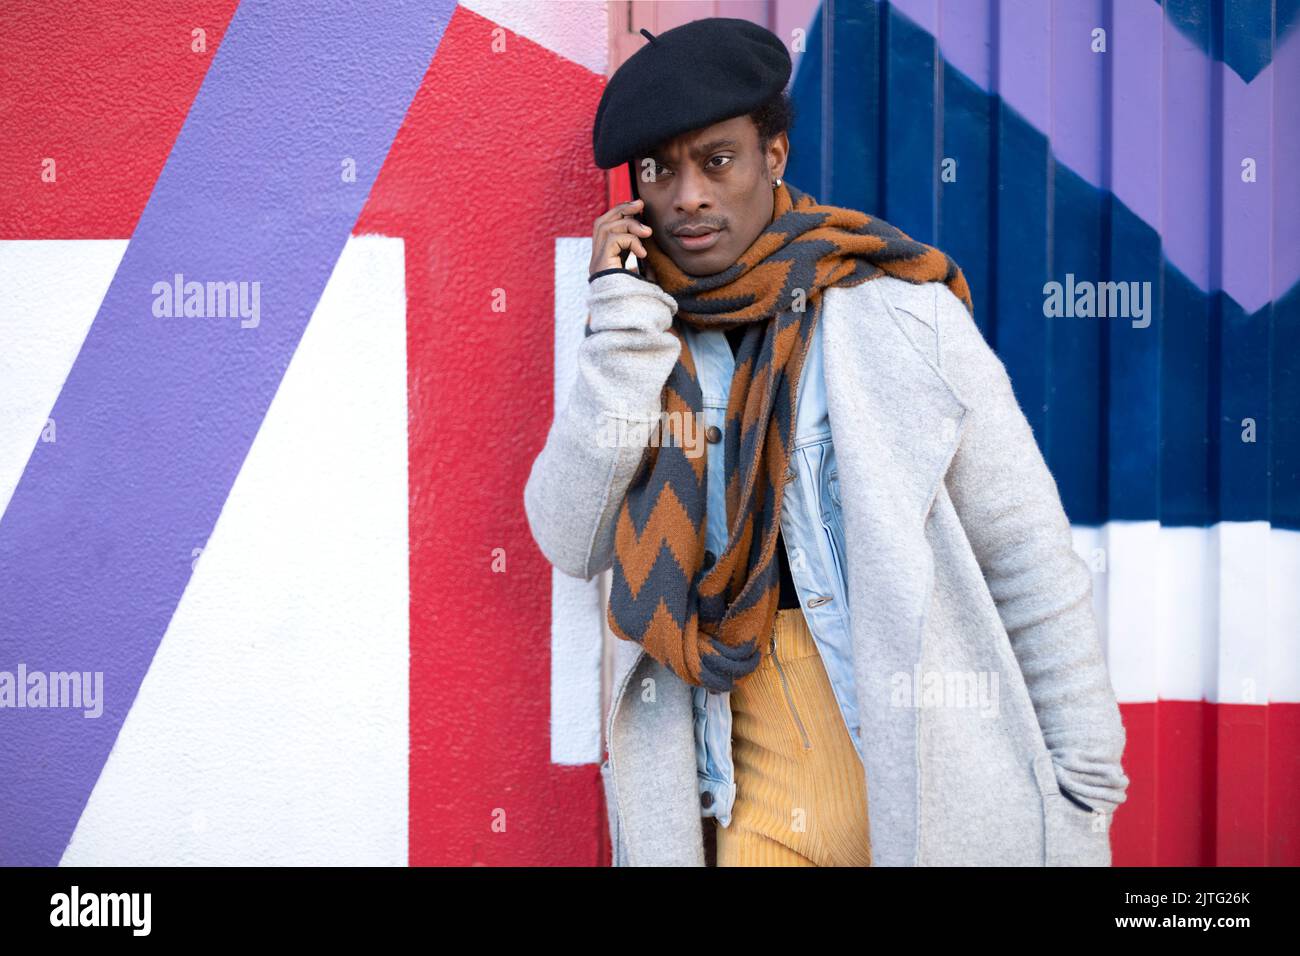 Jeune homme afro-américain adulte parlant au téléphone avec un geste sérieux. Il se penche contre un mur coloré. Banque D'Images